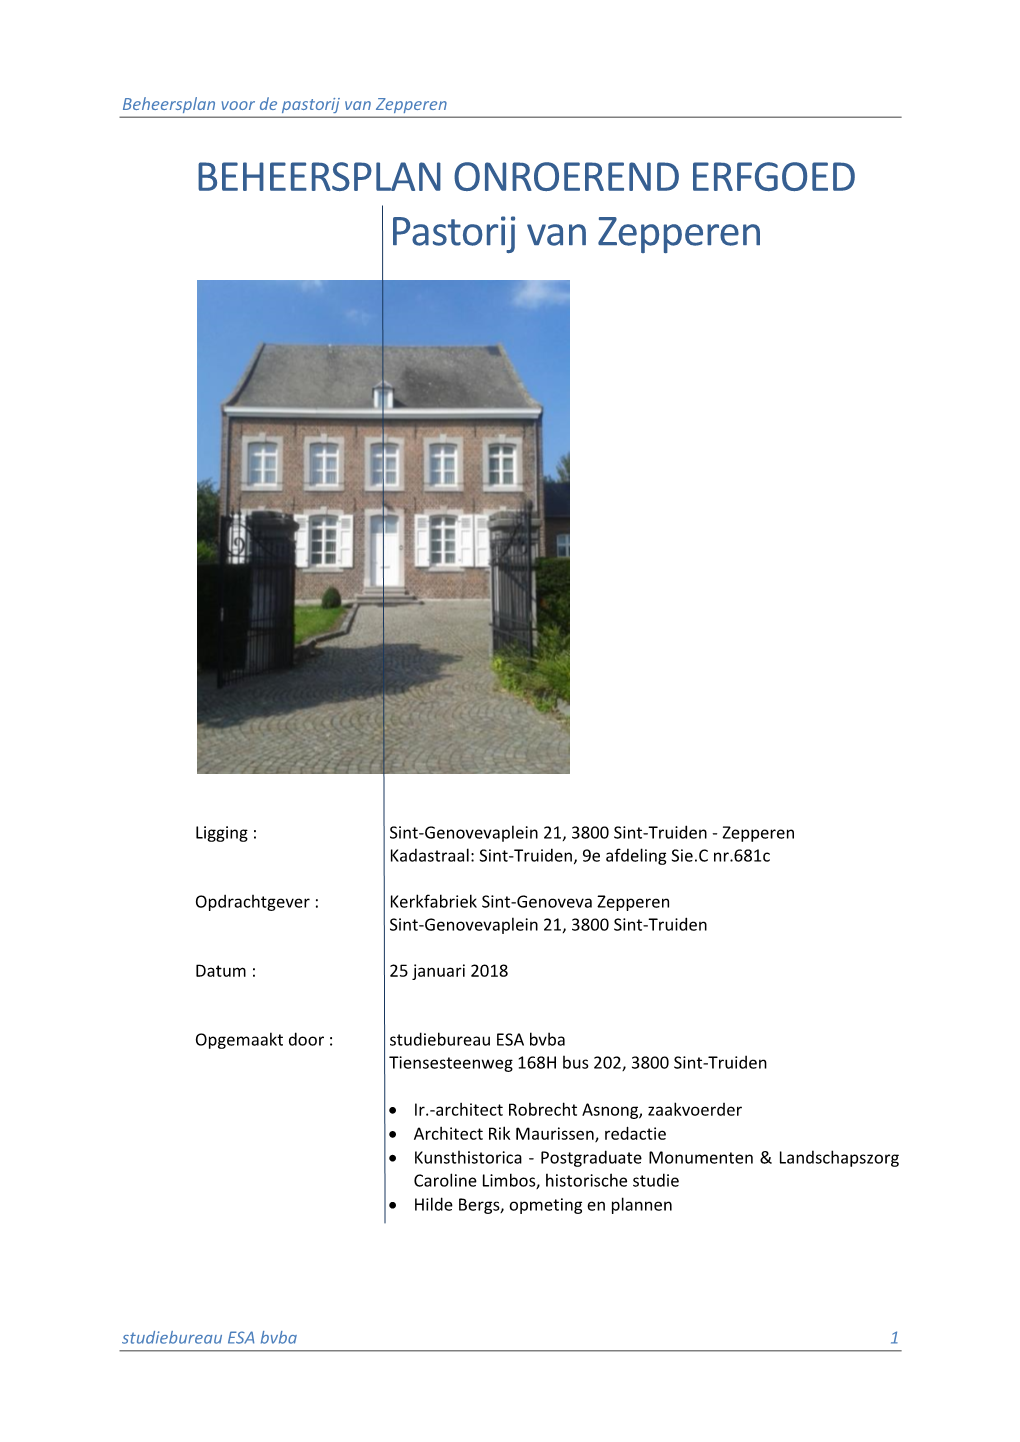 BEHEERSPLAN ONROEREND ERFGOED Pastorij Van Zepperen